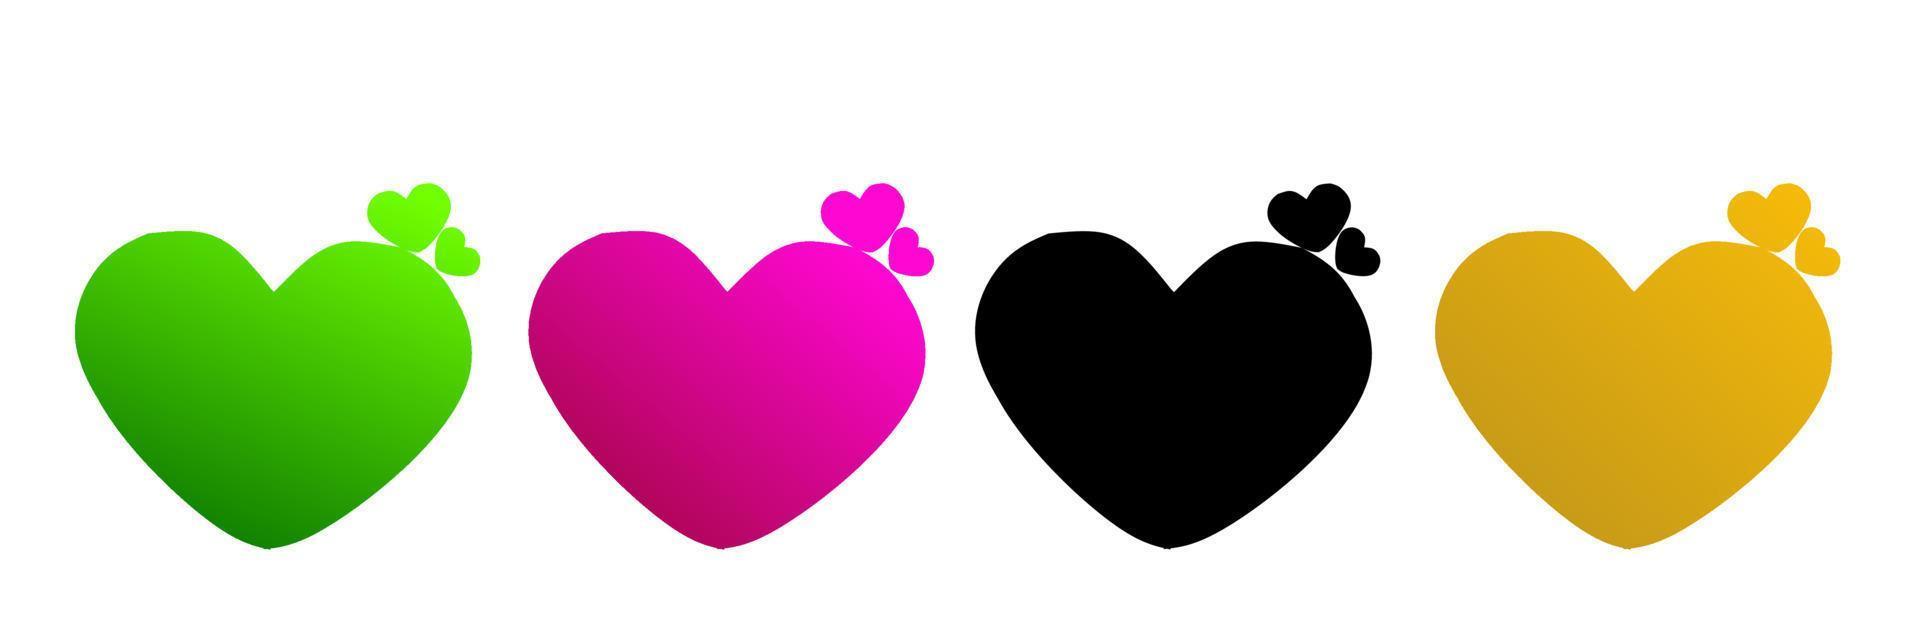 Liebe Herz Symbol Vektor. valentinstag romantische liebessymbolsammlung. Liebeskonzept. gestaltungselement für den valentinstag. vektor